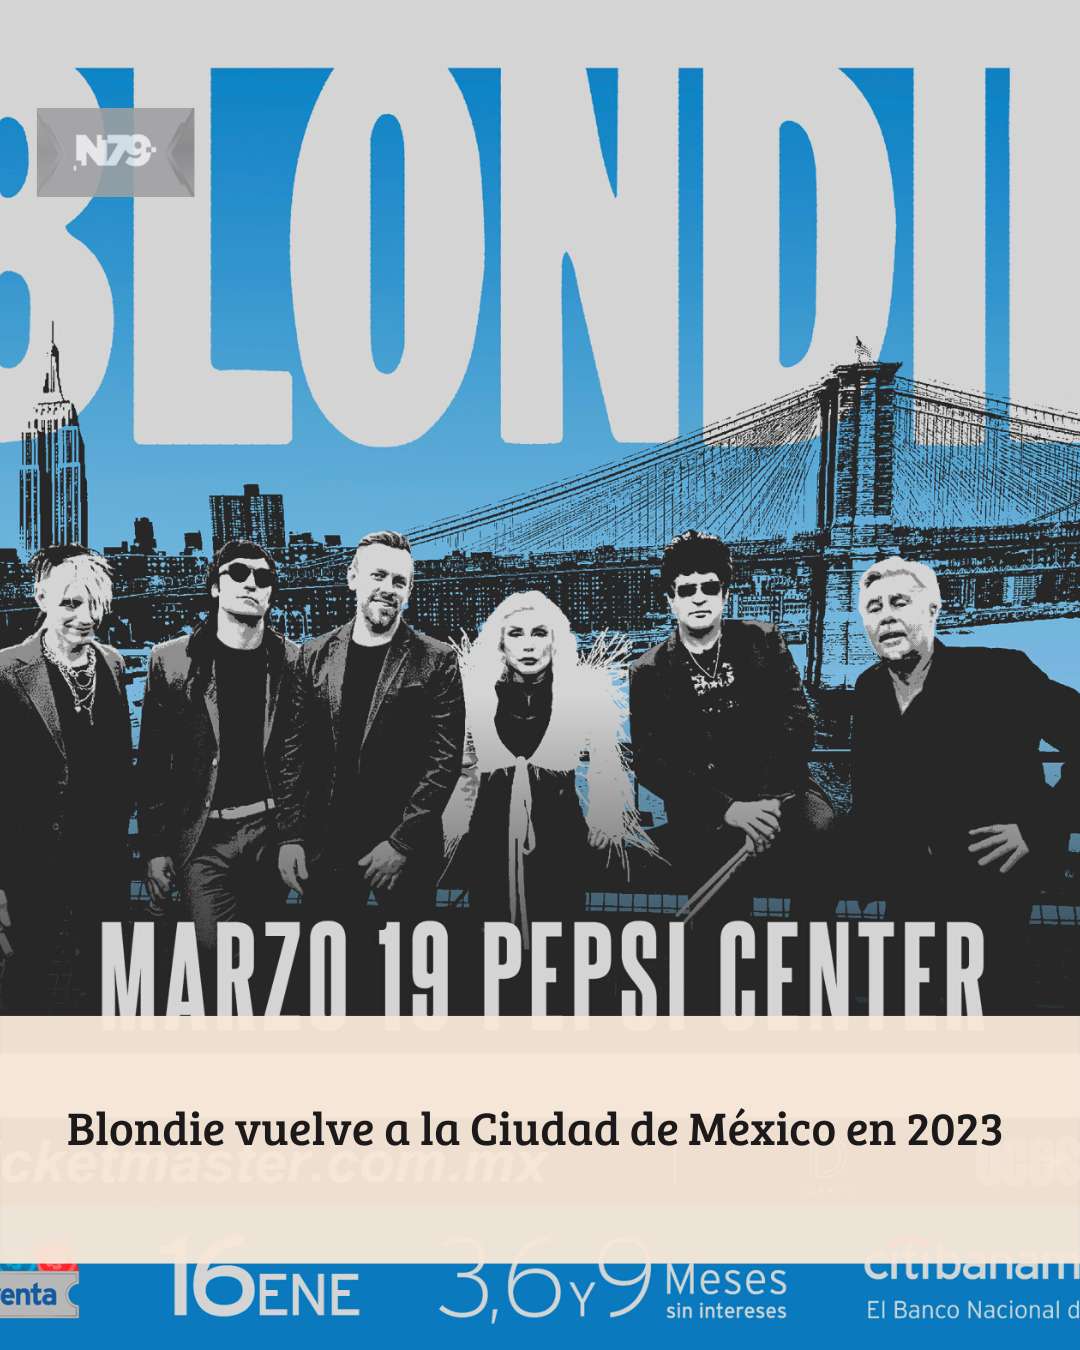 Blondie vuelve a la Ciudad de México en 2023